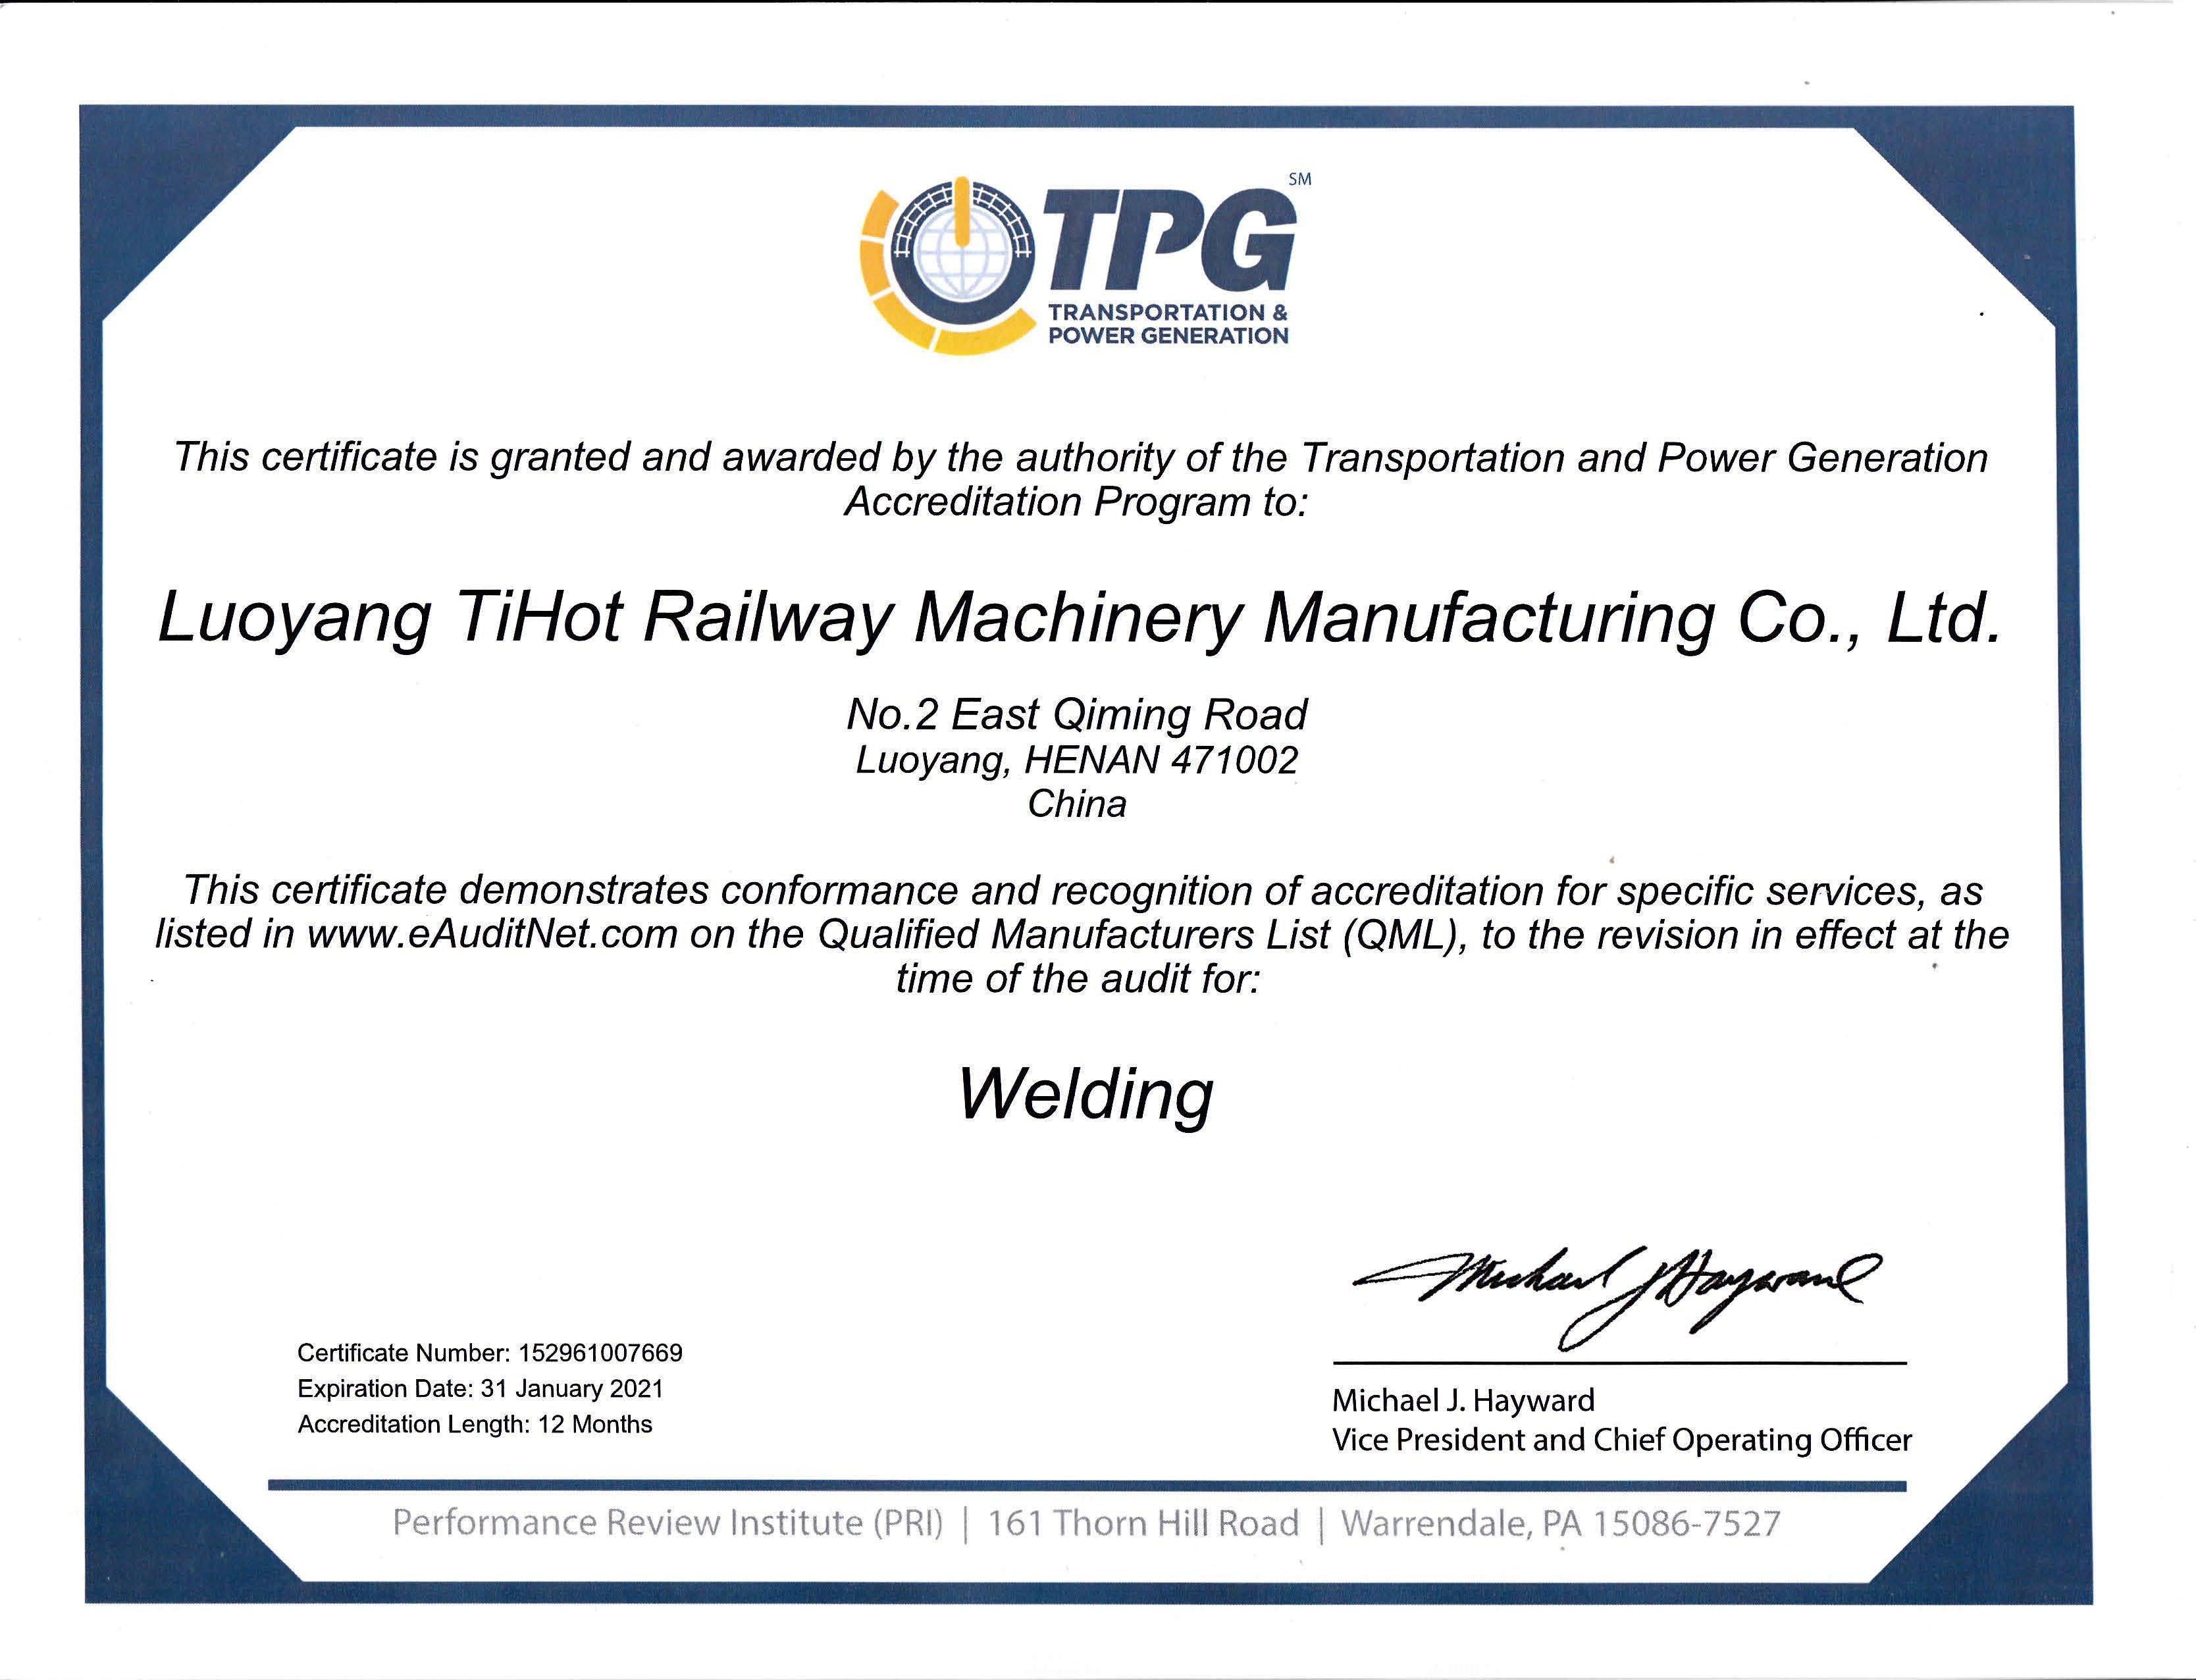 TPG welding certificate